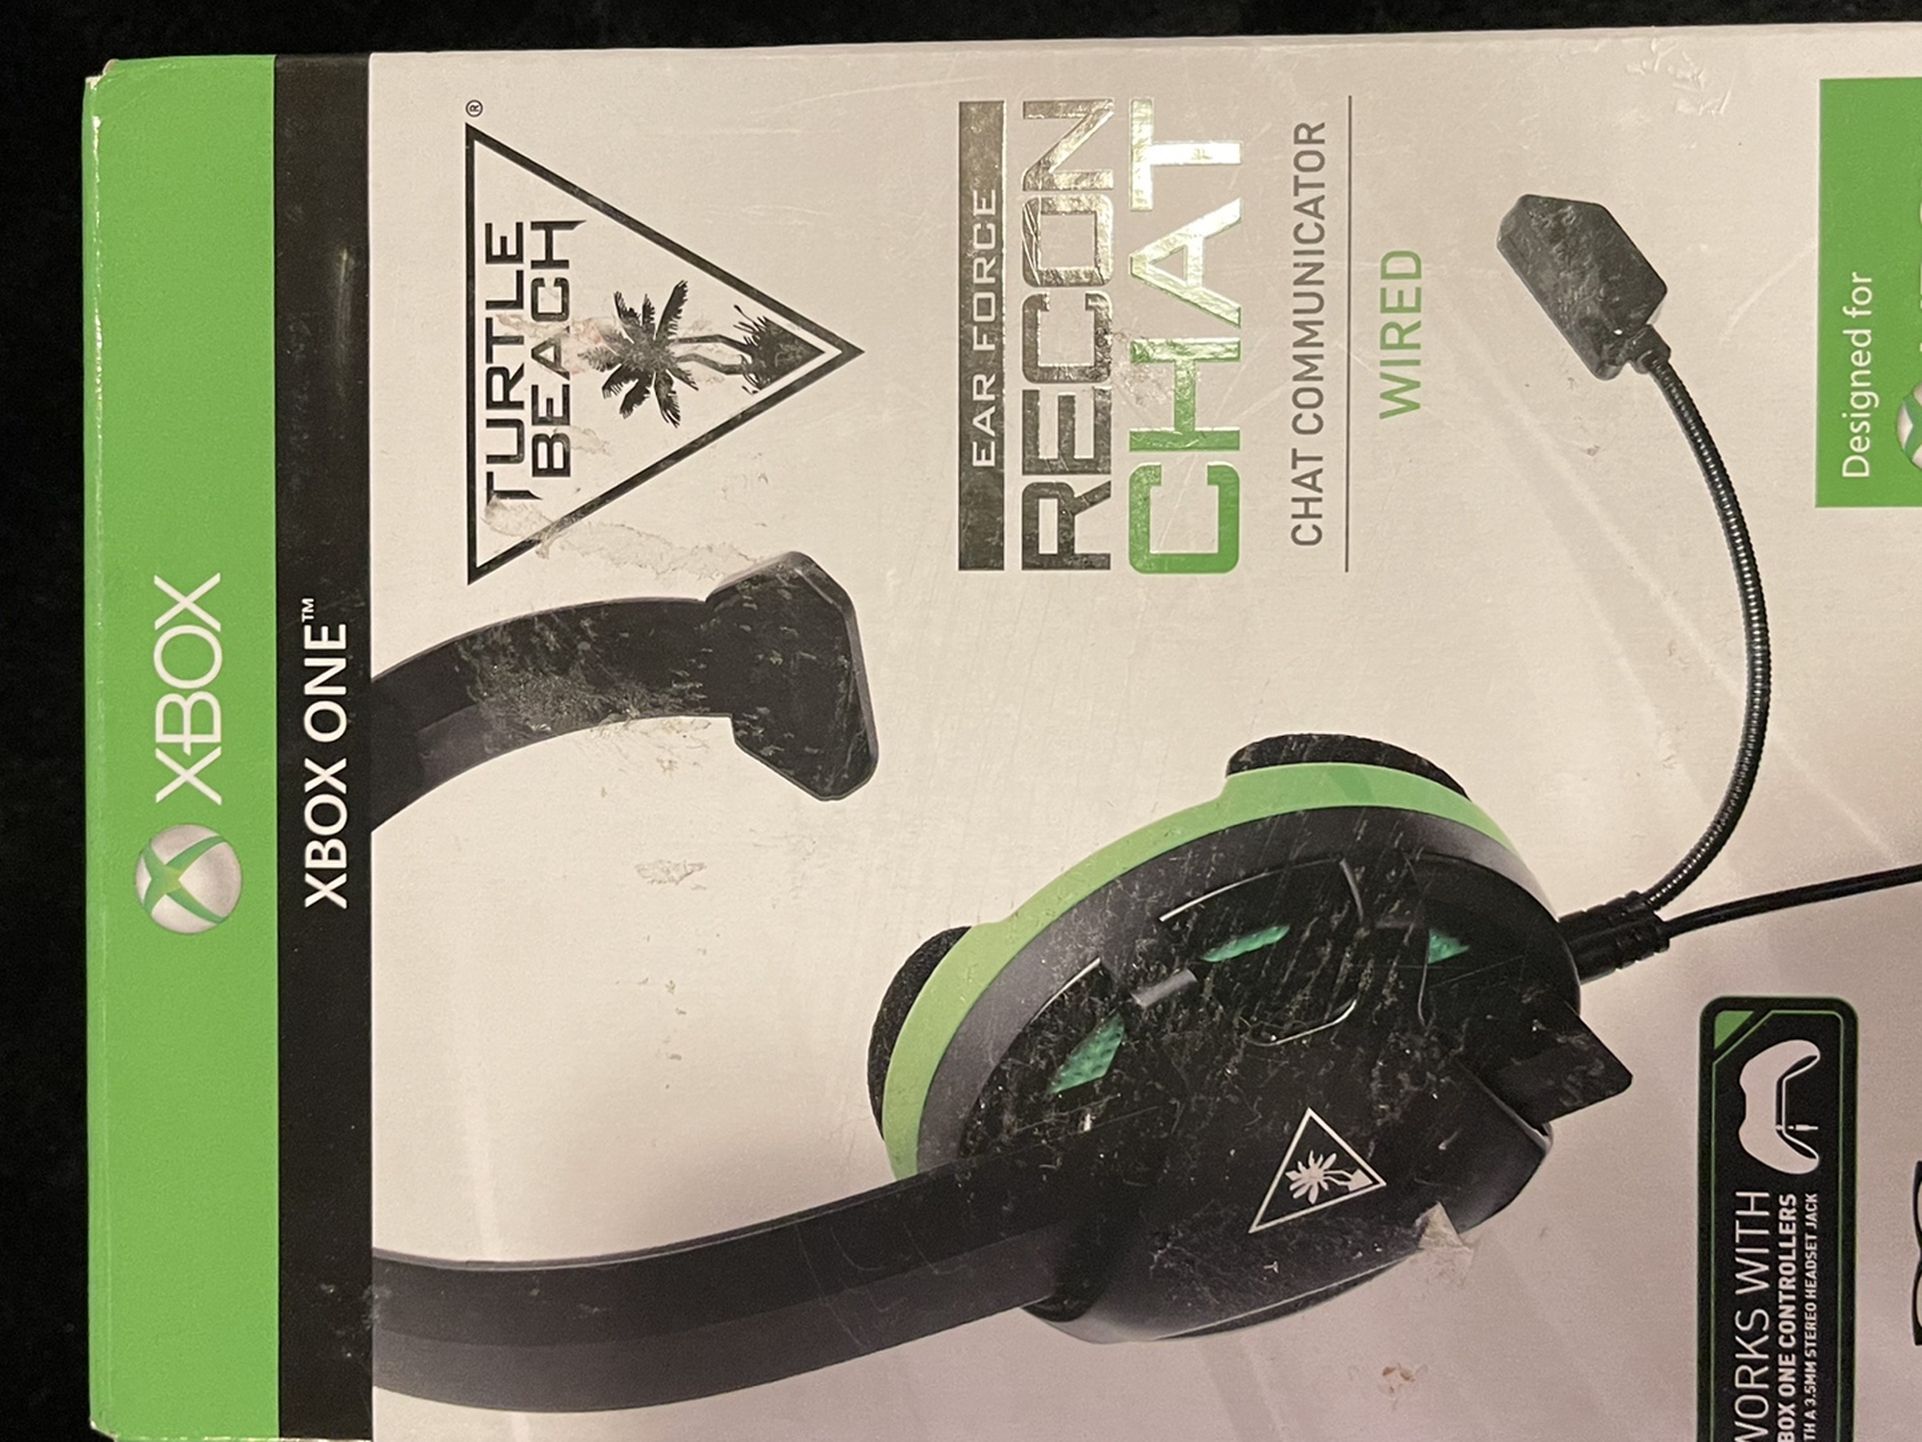 Xbox Headset